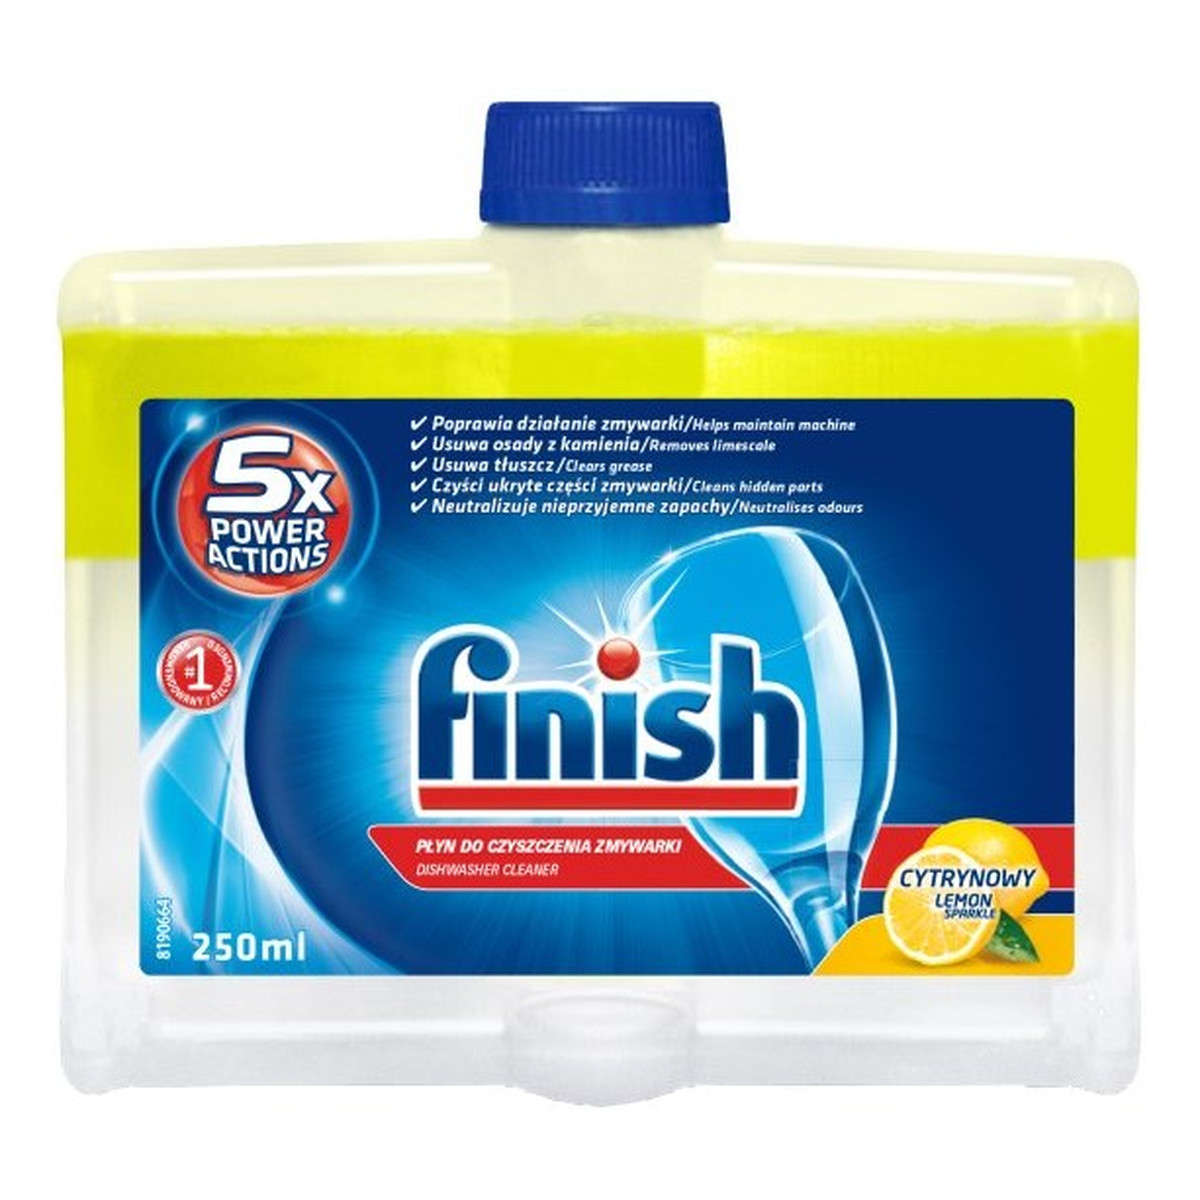 Finish 5x Power Actions płyn do czyszczenia zmywarki Lemon 250ml